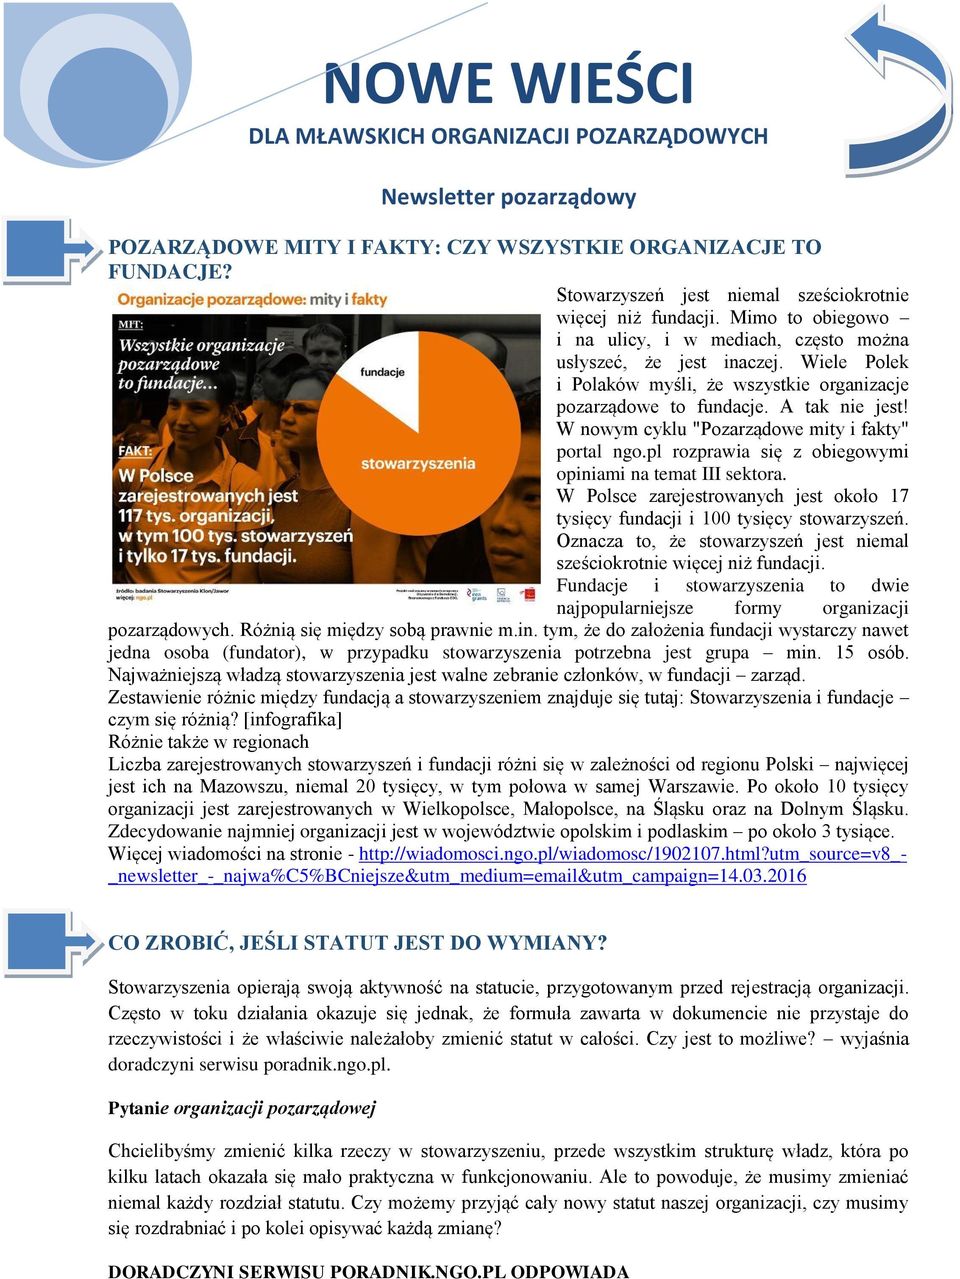 W nowym cyklu "Pozarządowe mity i fakty" portal ngo.pl rozprawia się z obiegowymi opiniami na temat III sektora. W Polsce zarejestrowanych jest około 17 tysięcy fundacji i 100 tysięcy stowarzyszeń.